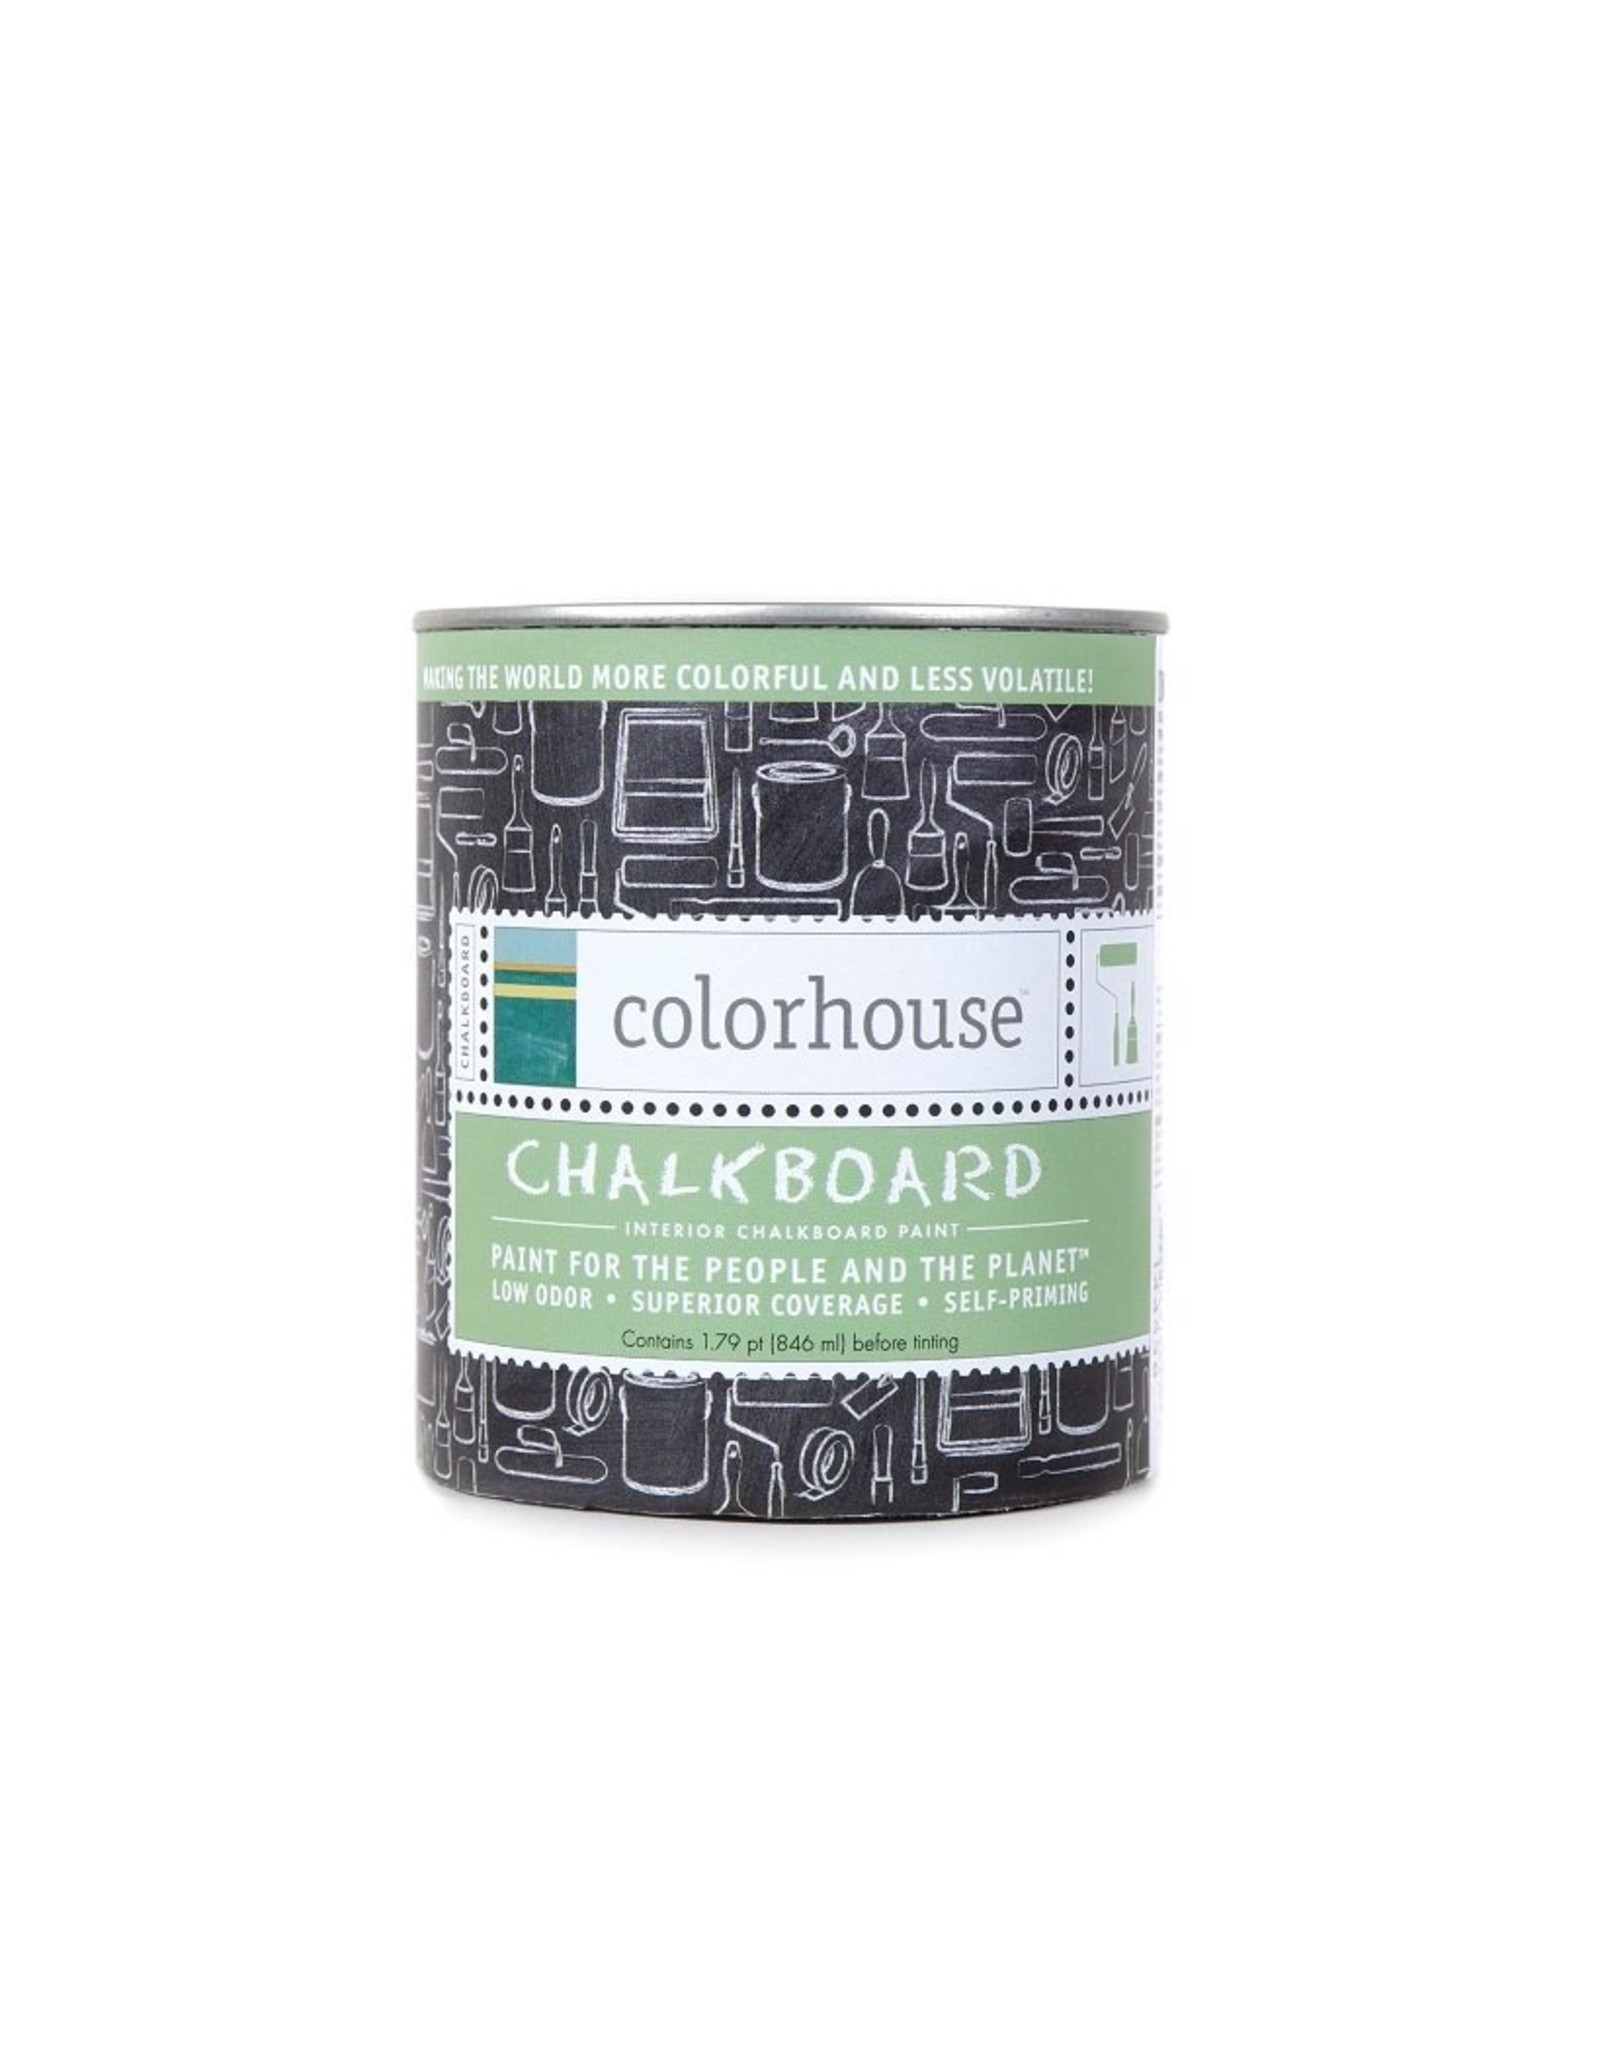 Colorhouse Chalkboard Paint 1 Quart